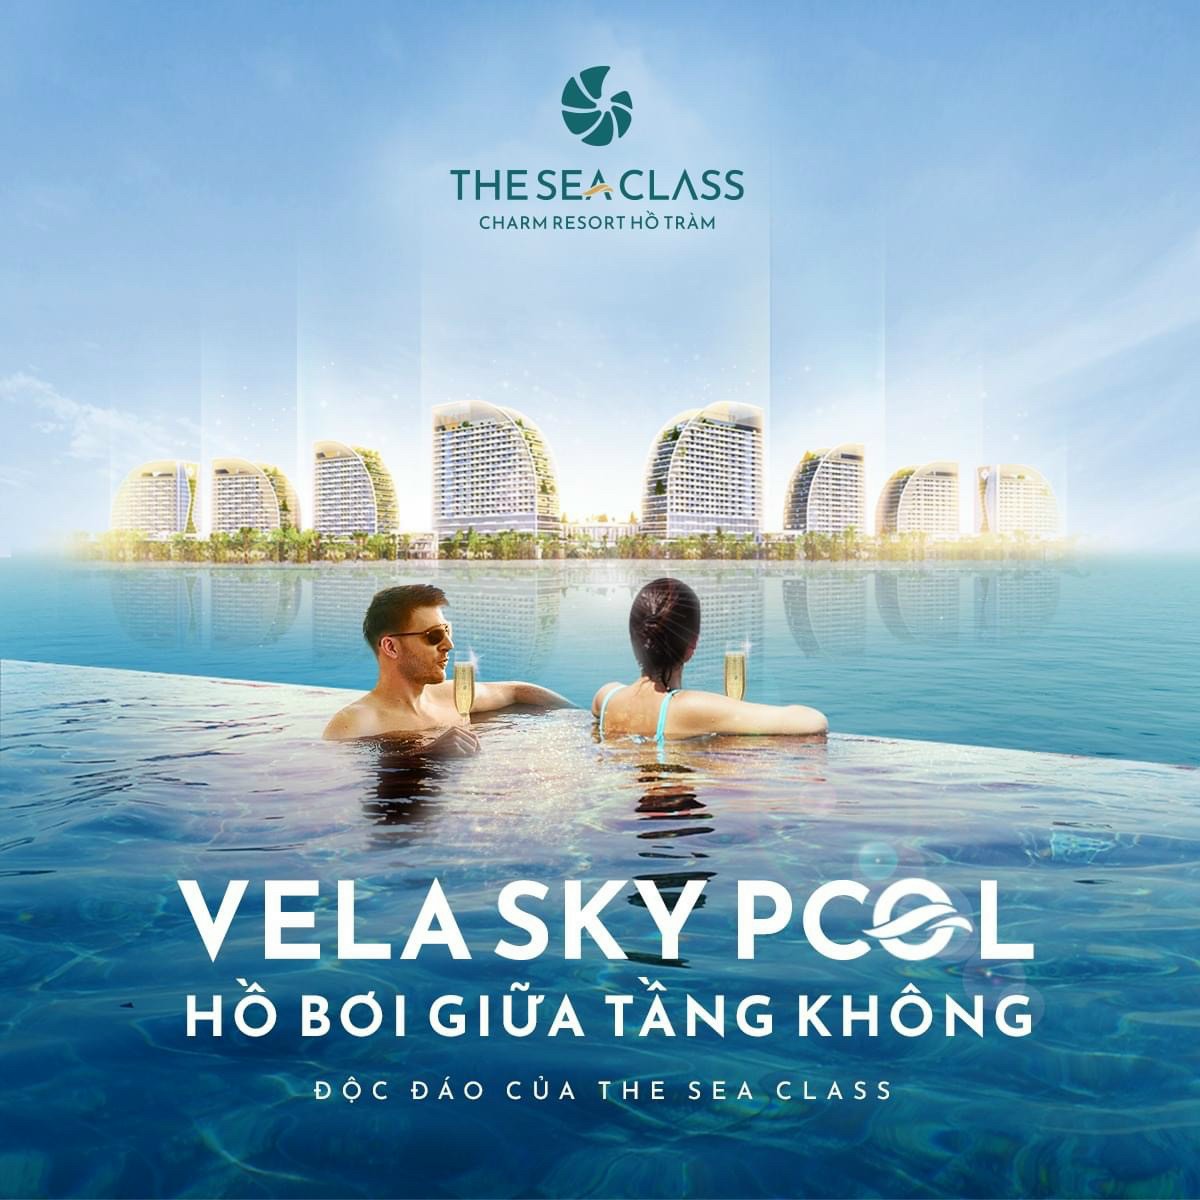 Vela Sky Pool at The Sea Class